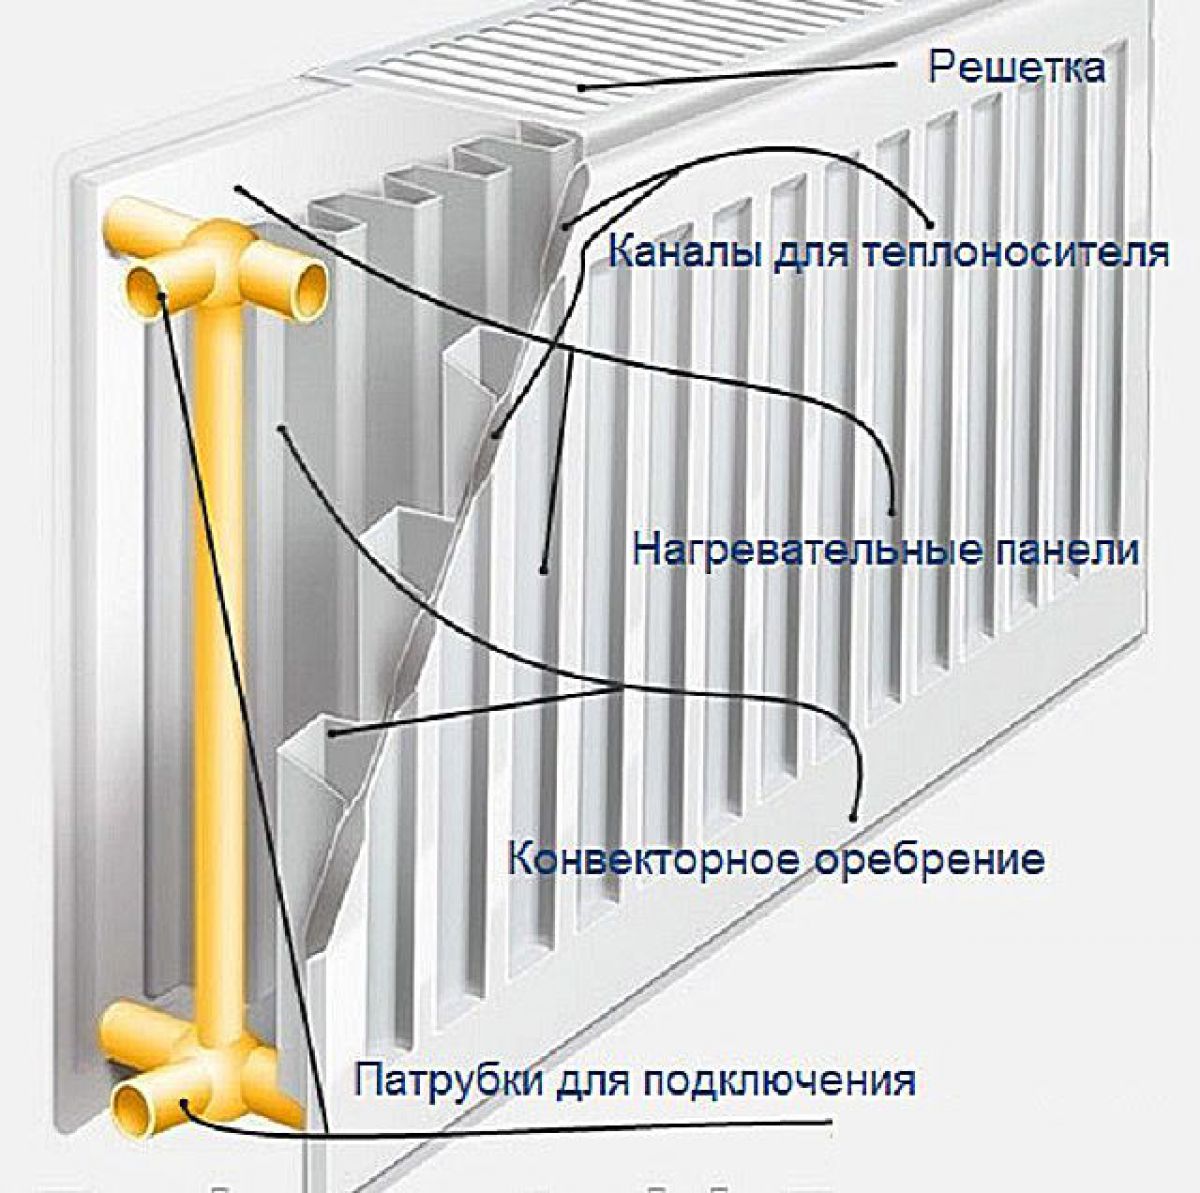 Радиаторы отопления. Стальные, алюминиевые и биметаллические радиаторы, сравнение 3523